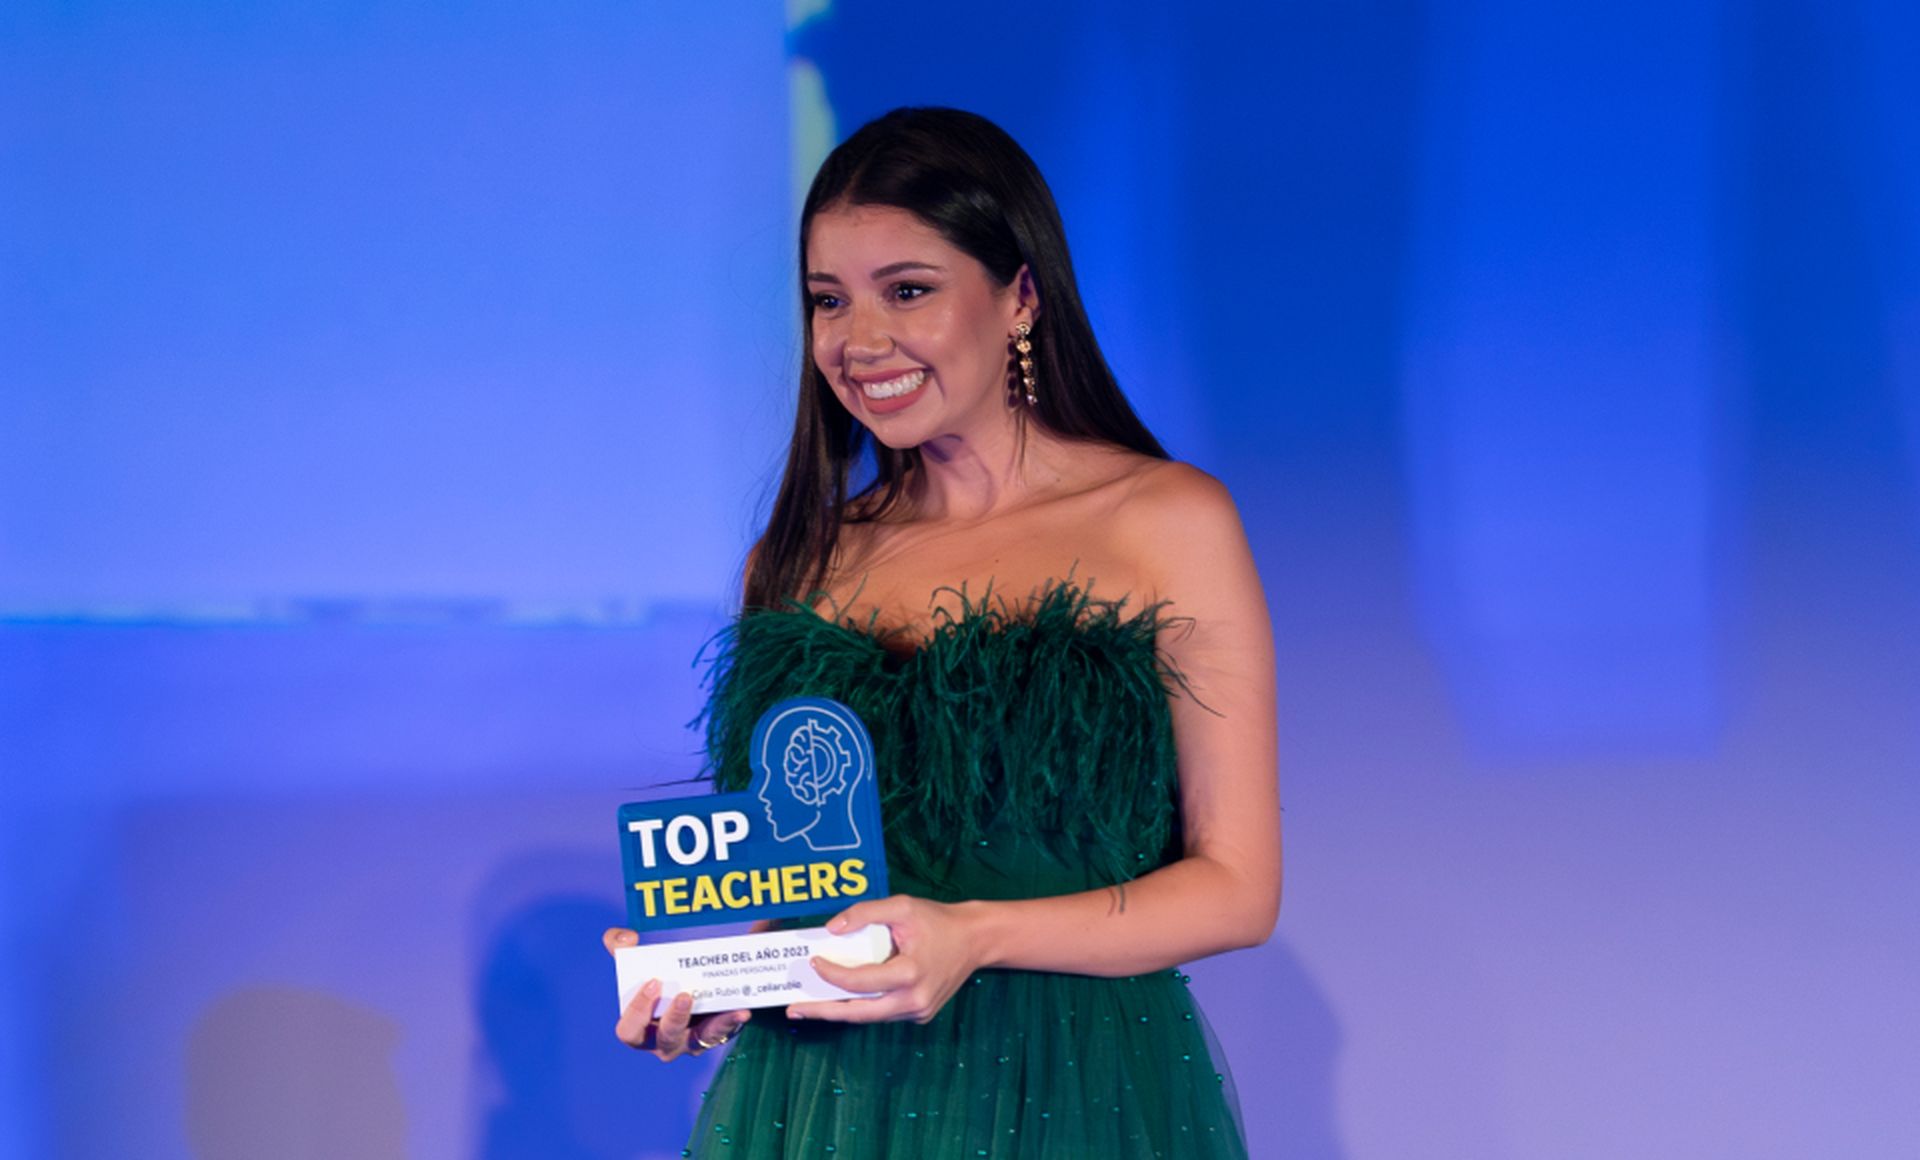 Celia Martín Rubio (@_celiarubio) recogió el premio a Top Teacher del Año en la categoría de Finanzas Personales, patrocinada por ING.